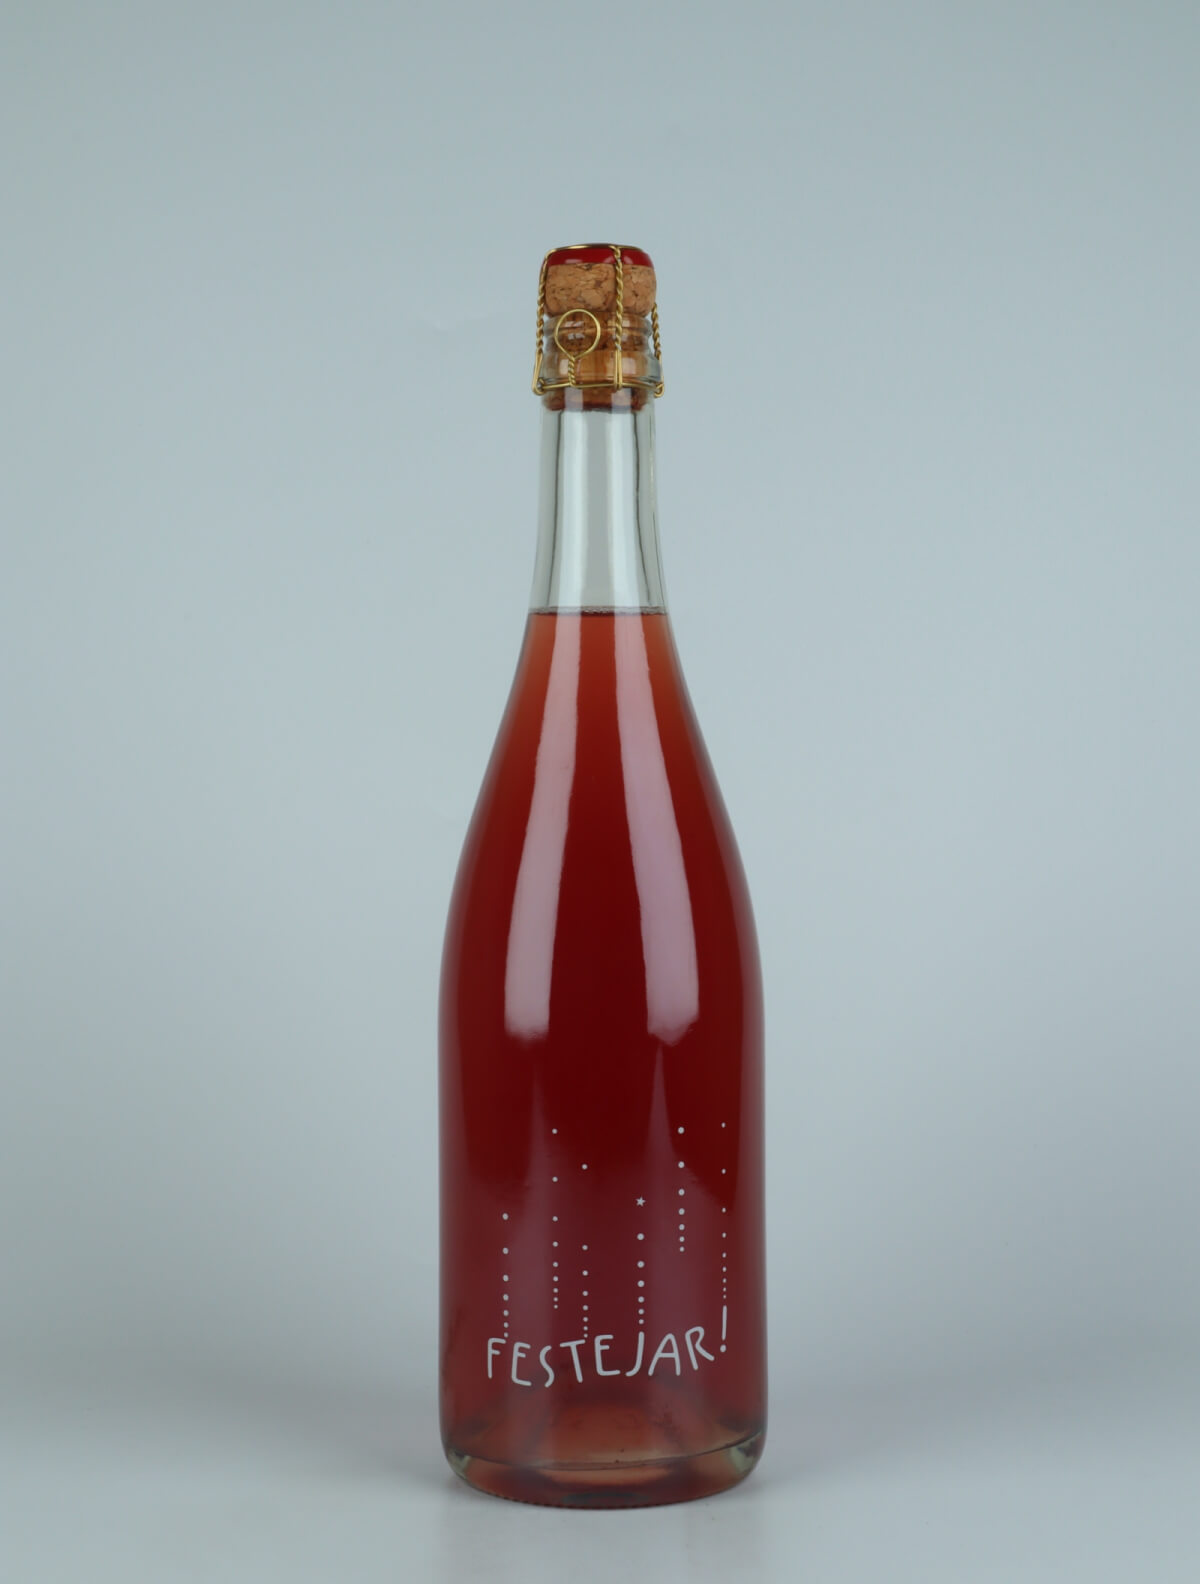 A bottle 2021 Festejar Rosé Sparkling from Patrick Bouju, Auvergne in France